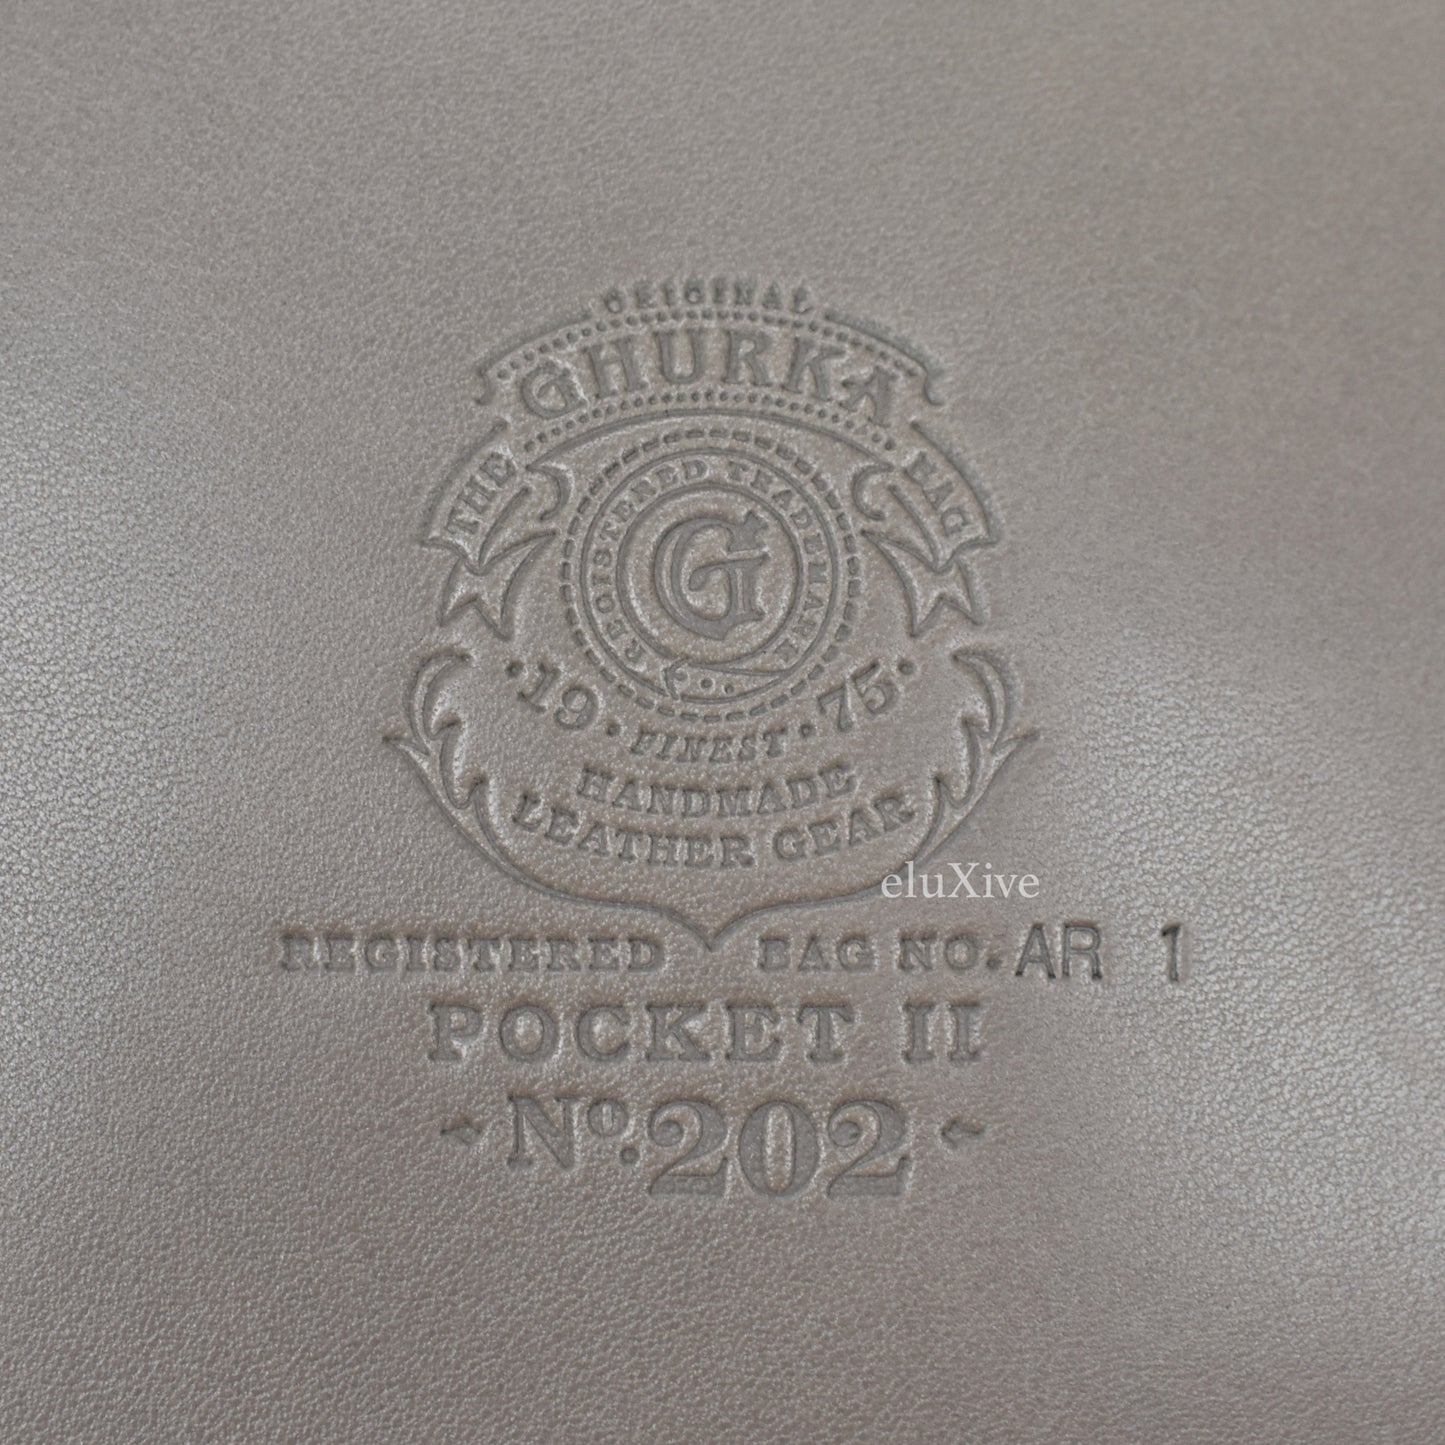 Ghurka - Leather Pocket No. 202 (Fog)